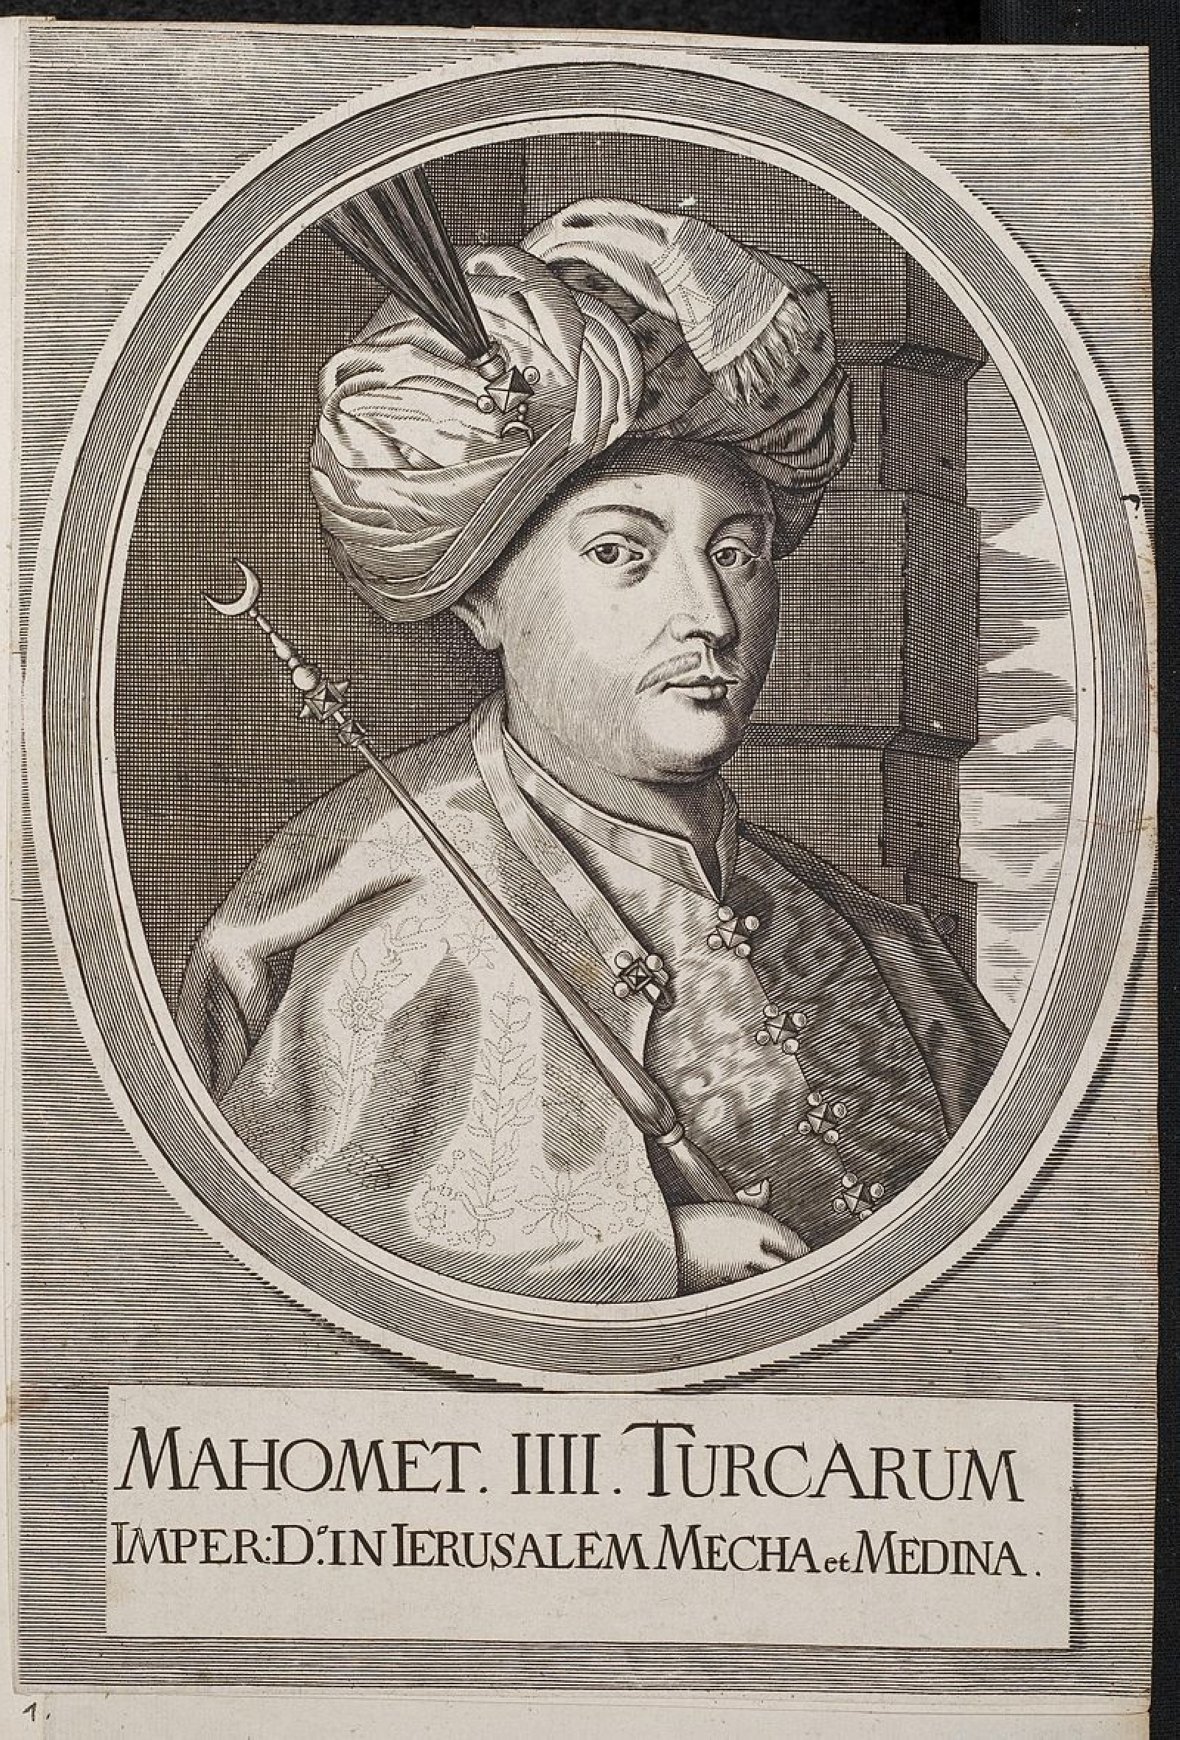 An engraving by Arolsen Klebeband depicts Mehmed III.